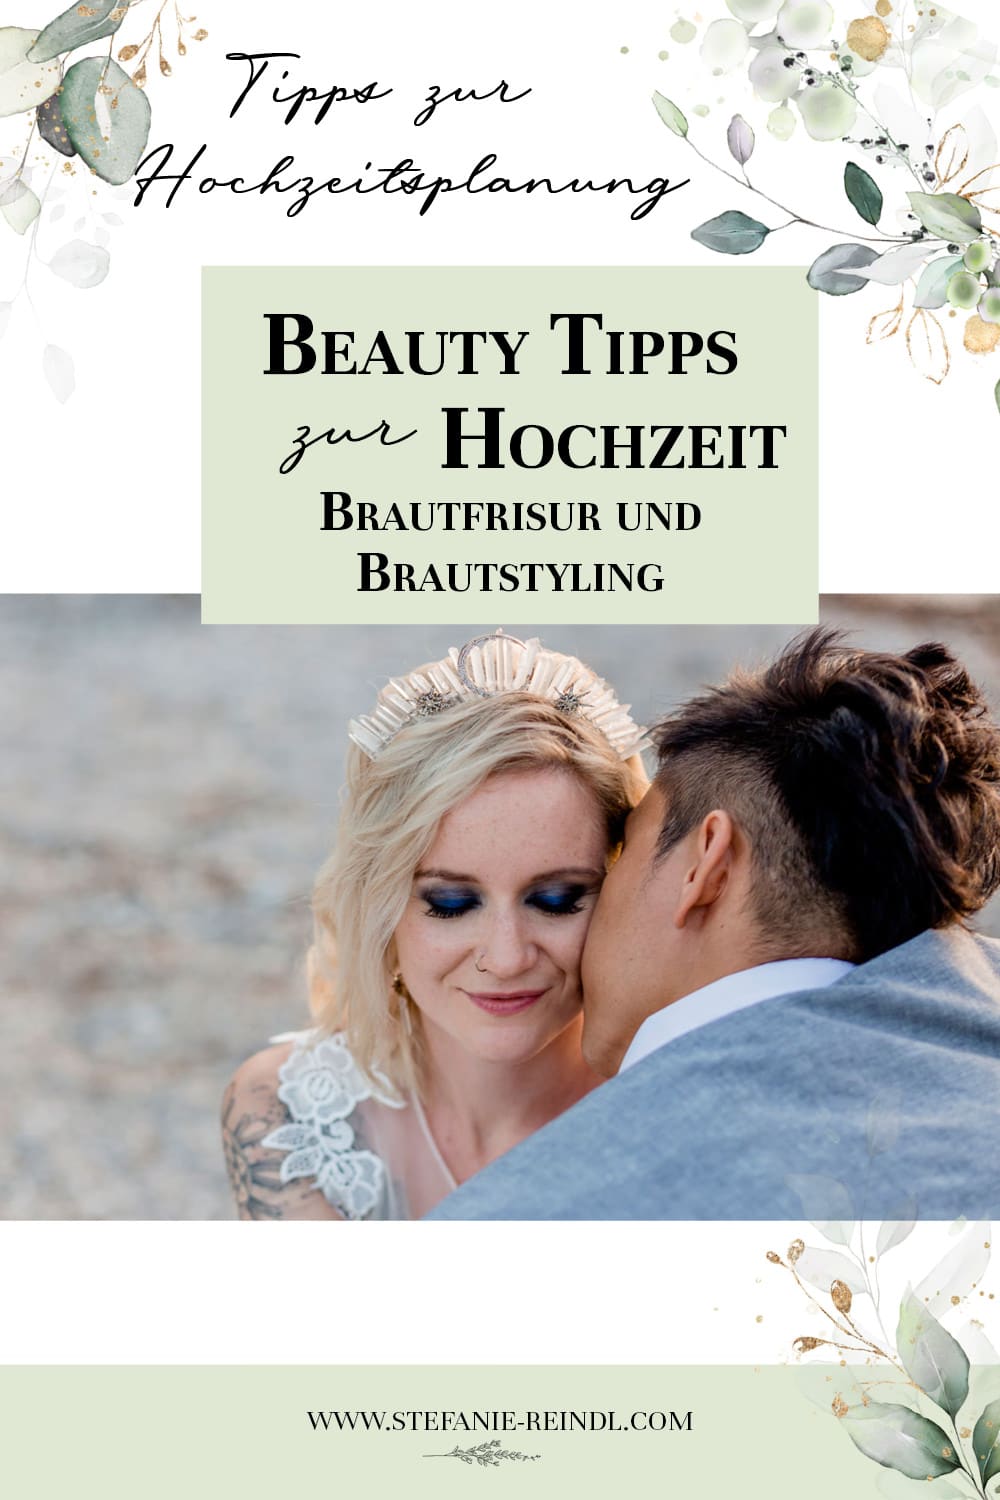 Brautfrisur & Brautstyling - Tipps für Haare und Make-Up